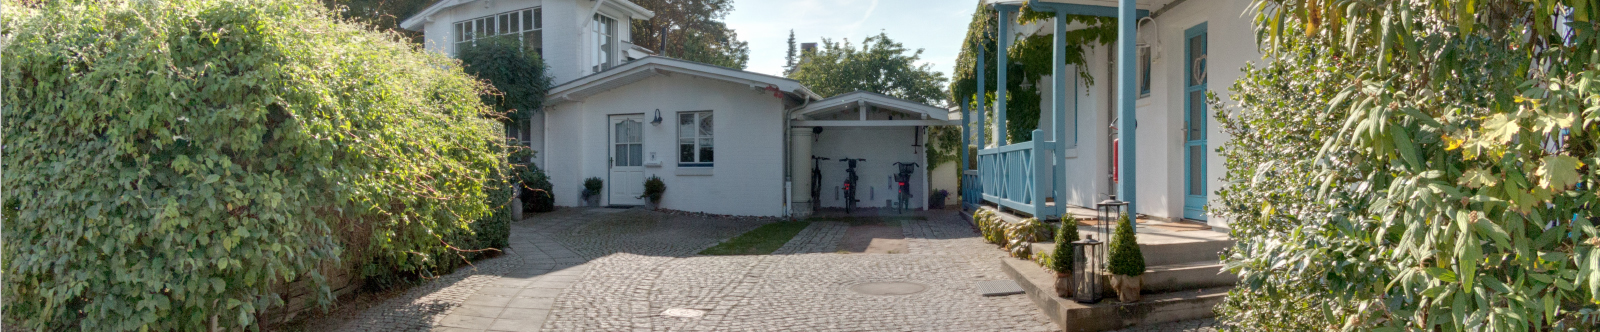 Ferienwohnungen Familie Schmidt in Kühlungsborn